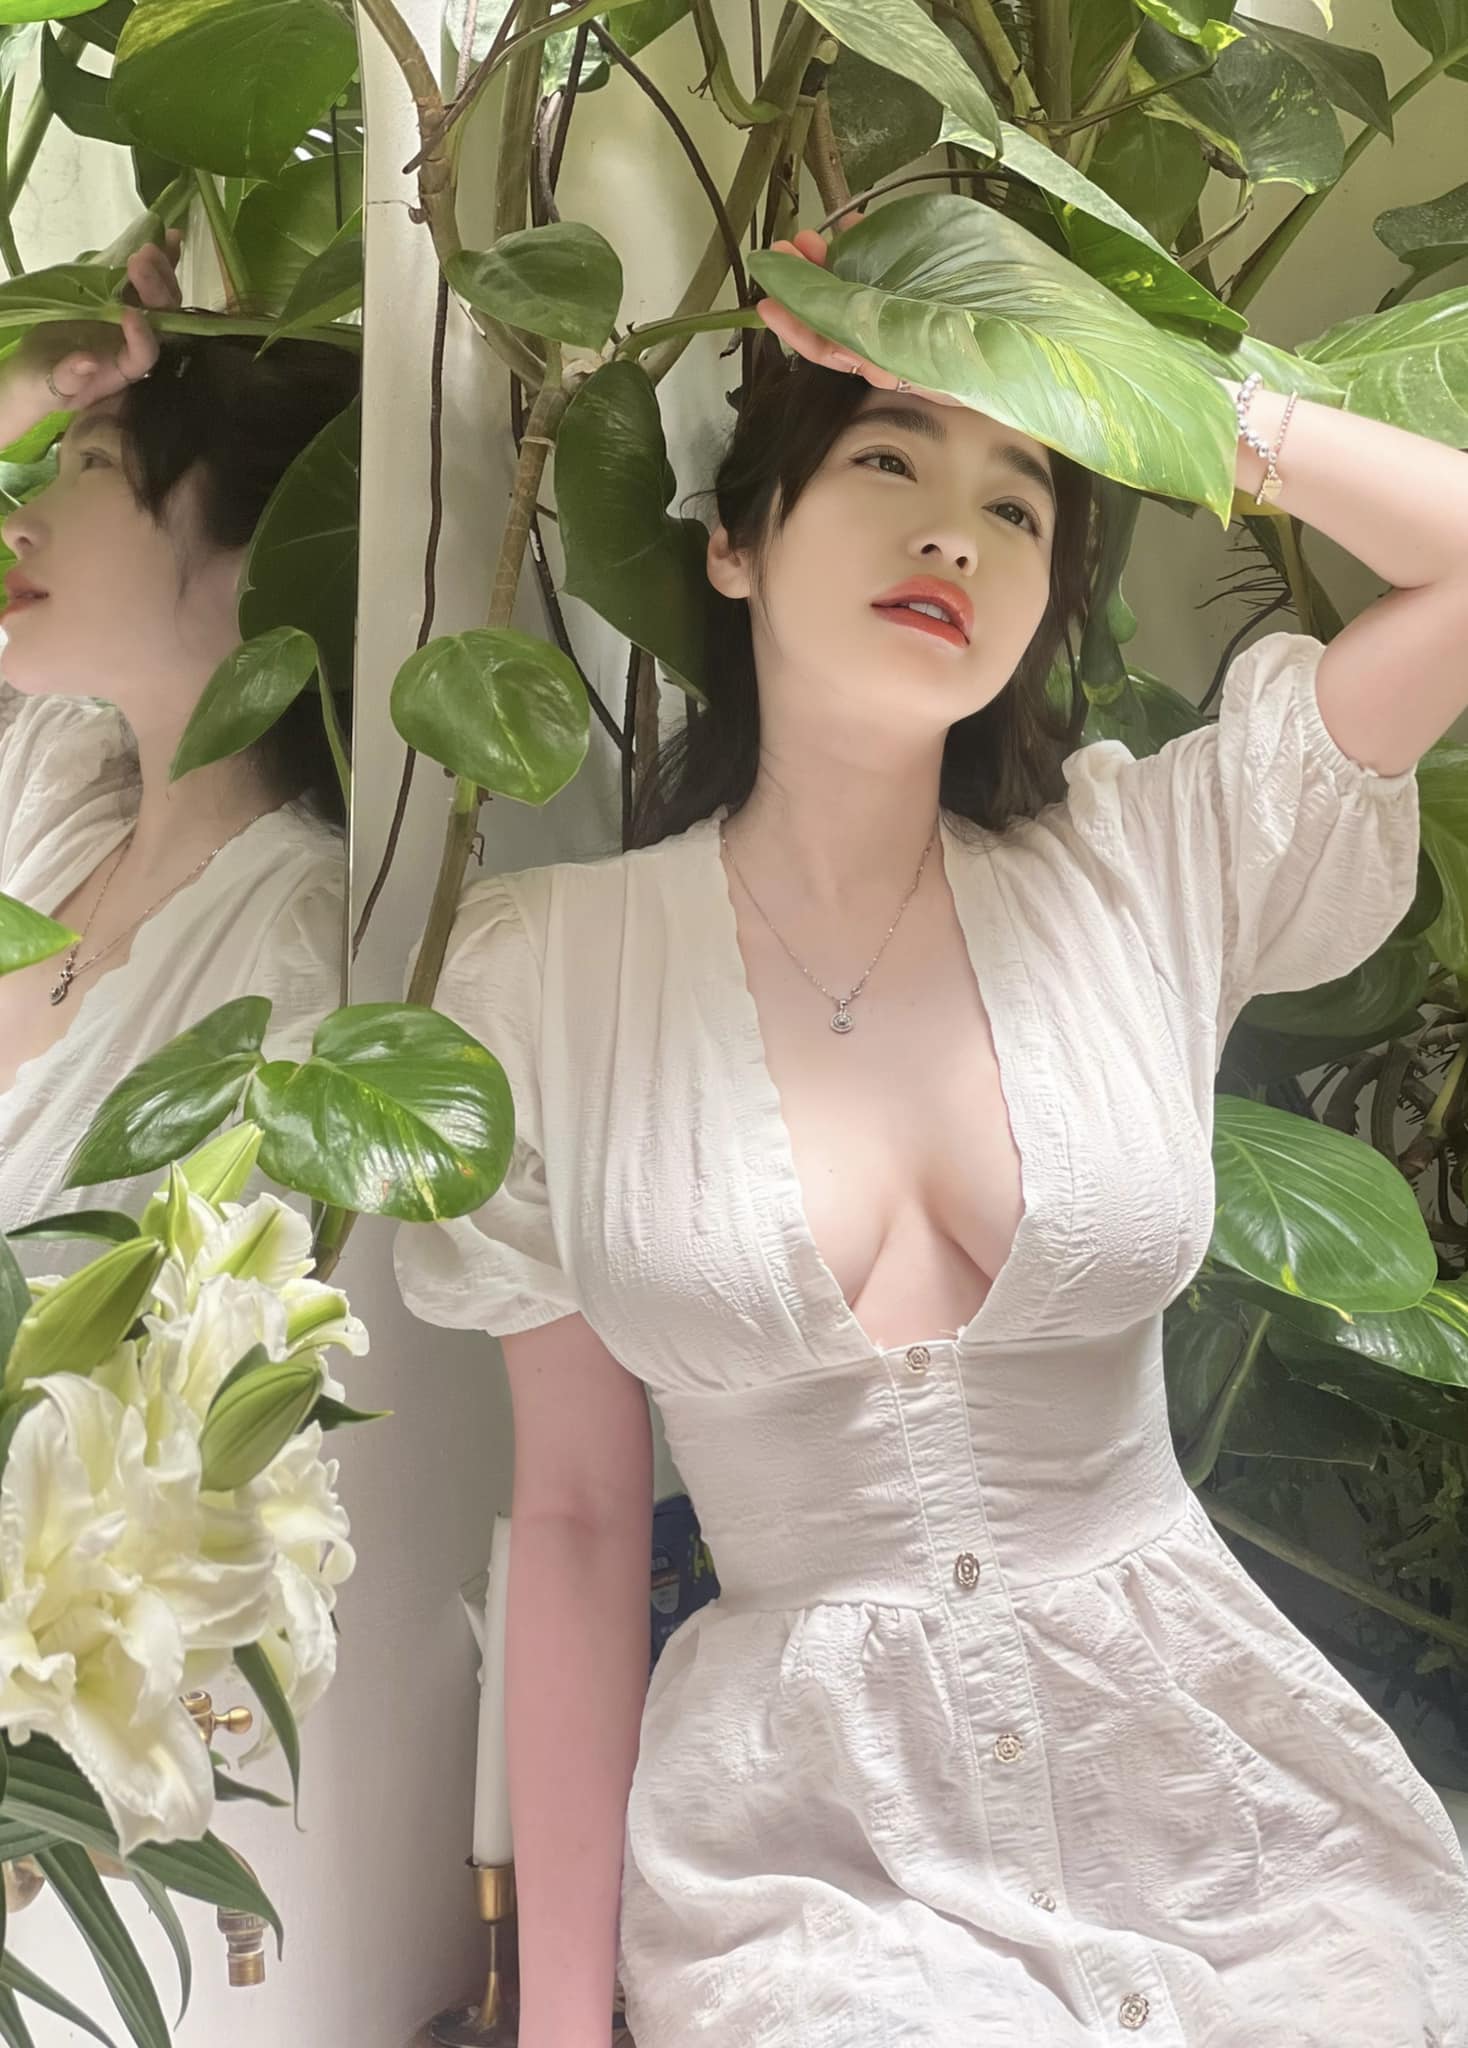 Trong concept chụp hình với cây hoa, Elly Trần được nhận xét "đẹp như thiếu nữ". Cô diện váy dài màu trắng, điểm nhấn là phần cổ xẻ sâu&nbsp;làm tăng thêm vẻ quyến rũ cho người mặc.&nbsp;